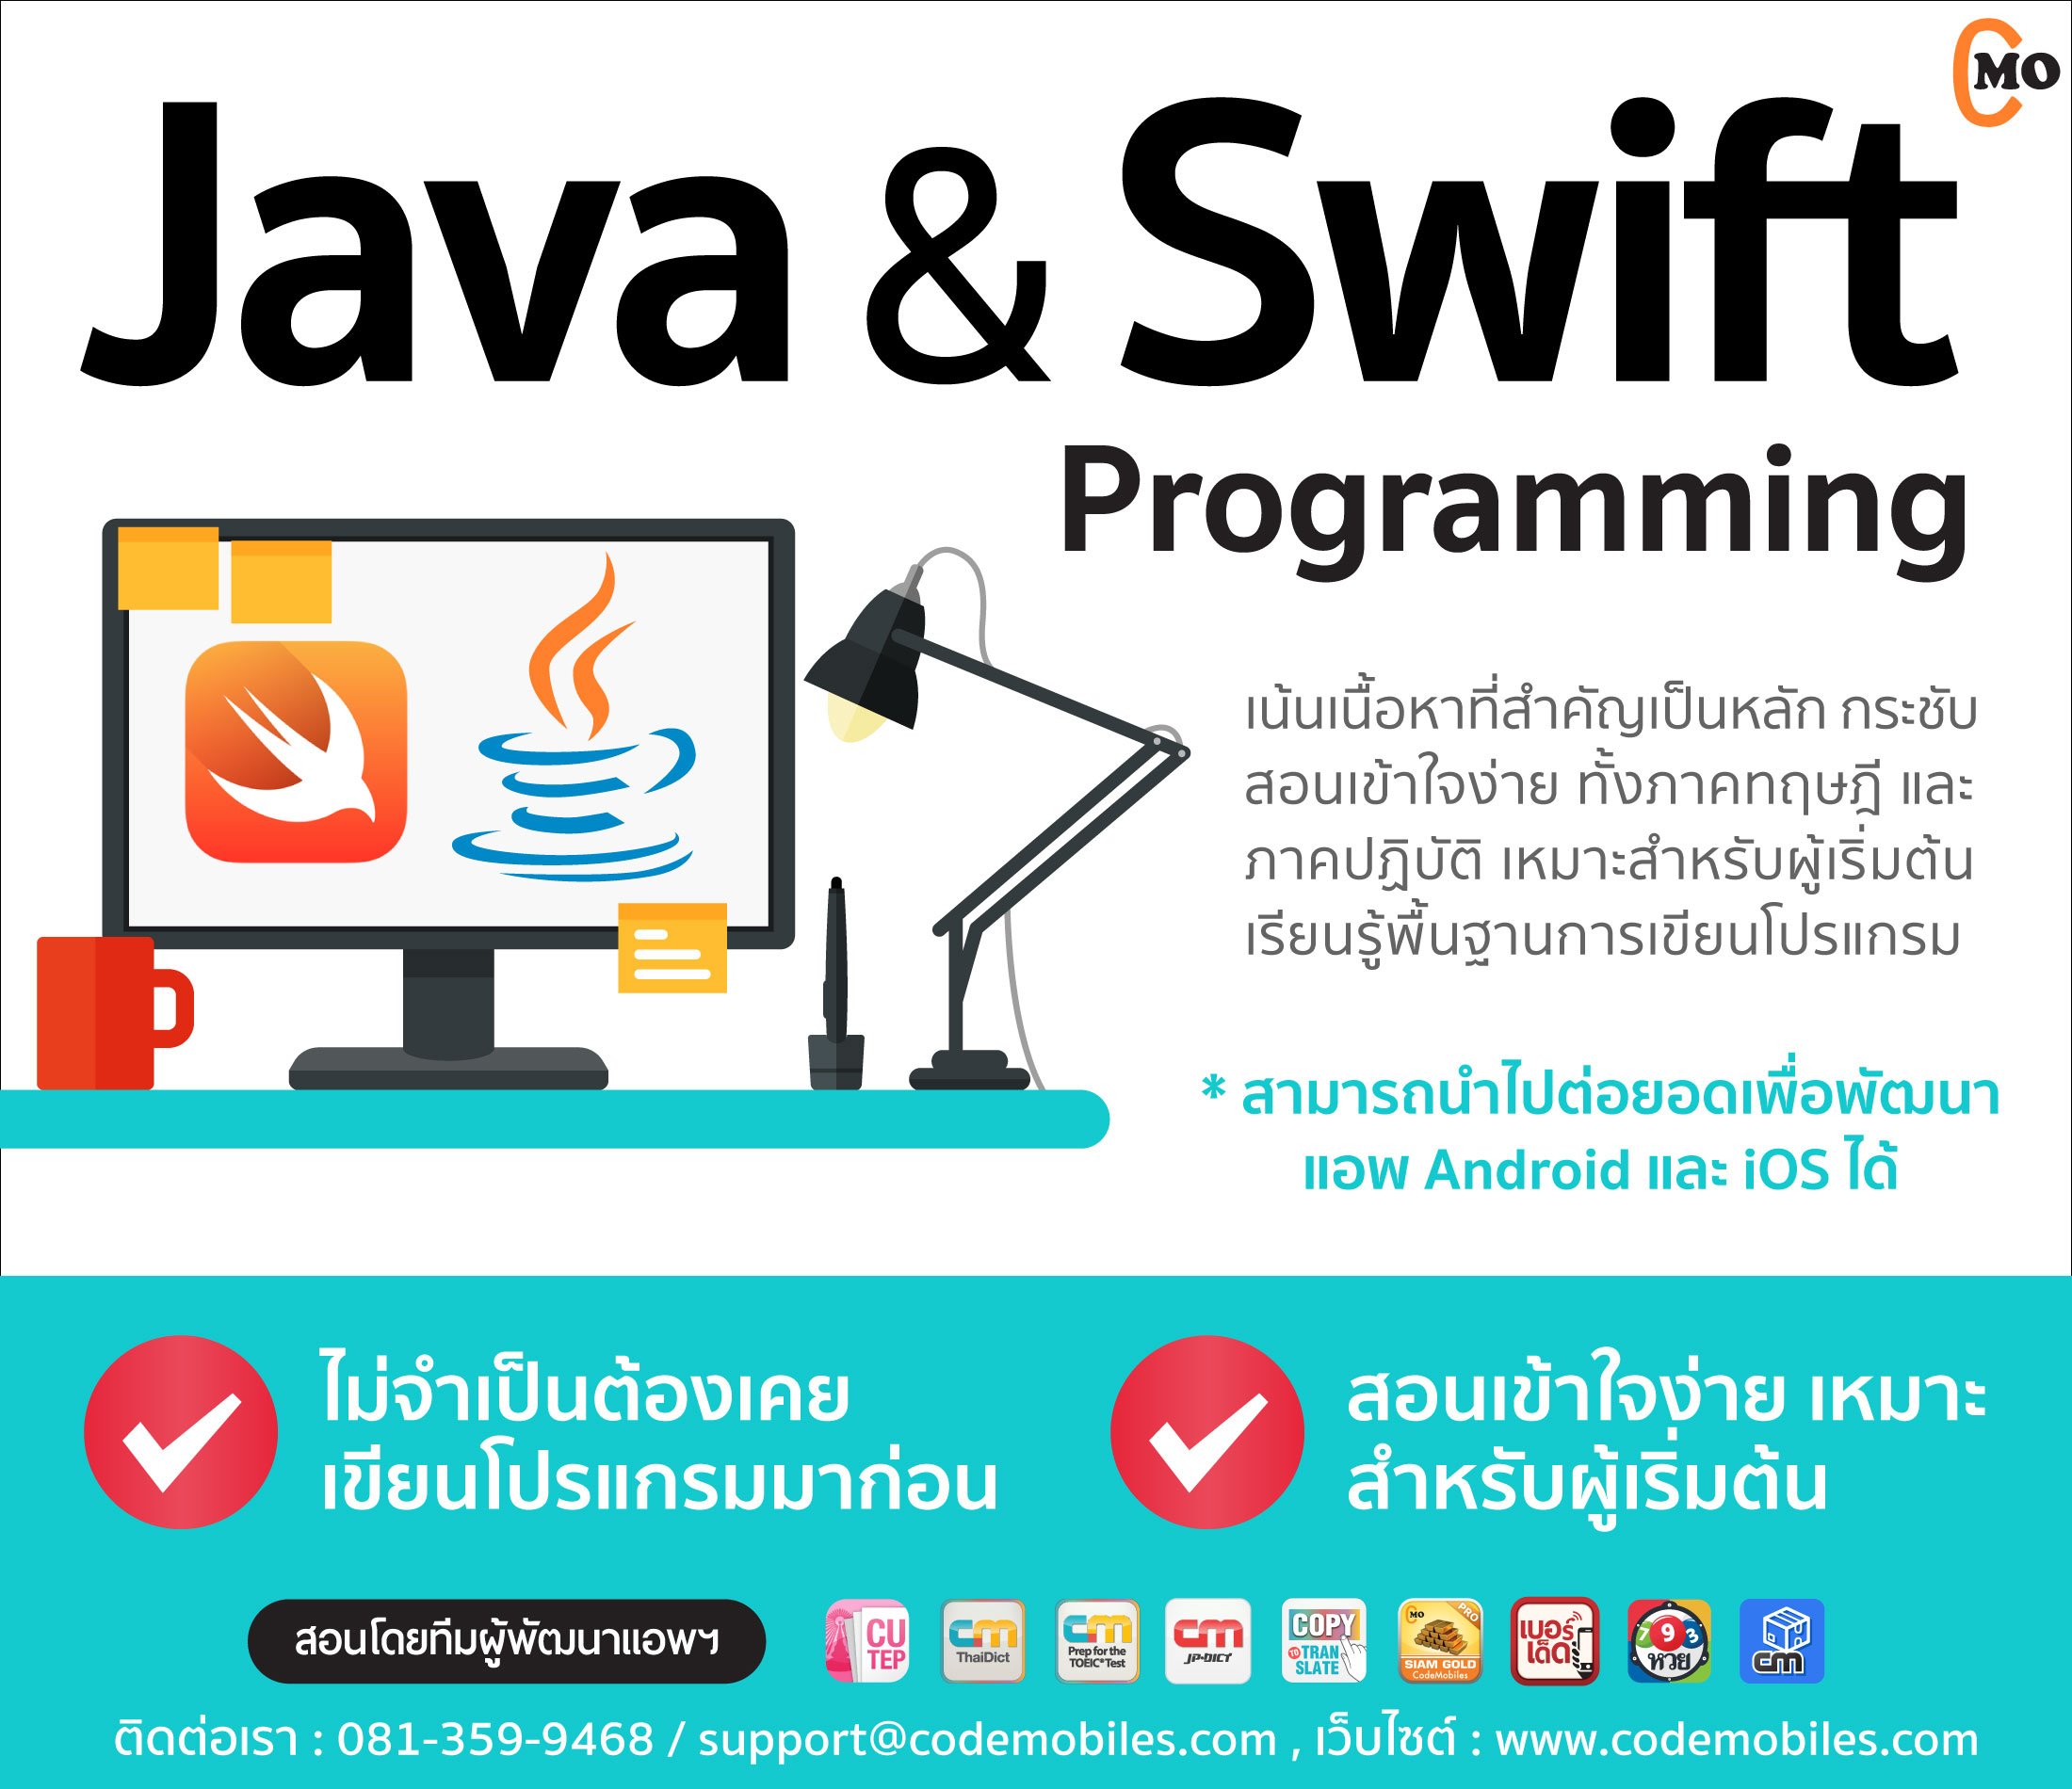 มาแล้ว Java & Swift Programming For Mobile Apps (สำหรับผู้ไม่เคยเขียนโปรแกรมมาก่อนเลย  หรือผู้ที่ล้างลาจากการเขียนโปรแกรมมานาน) | Blognone